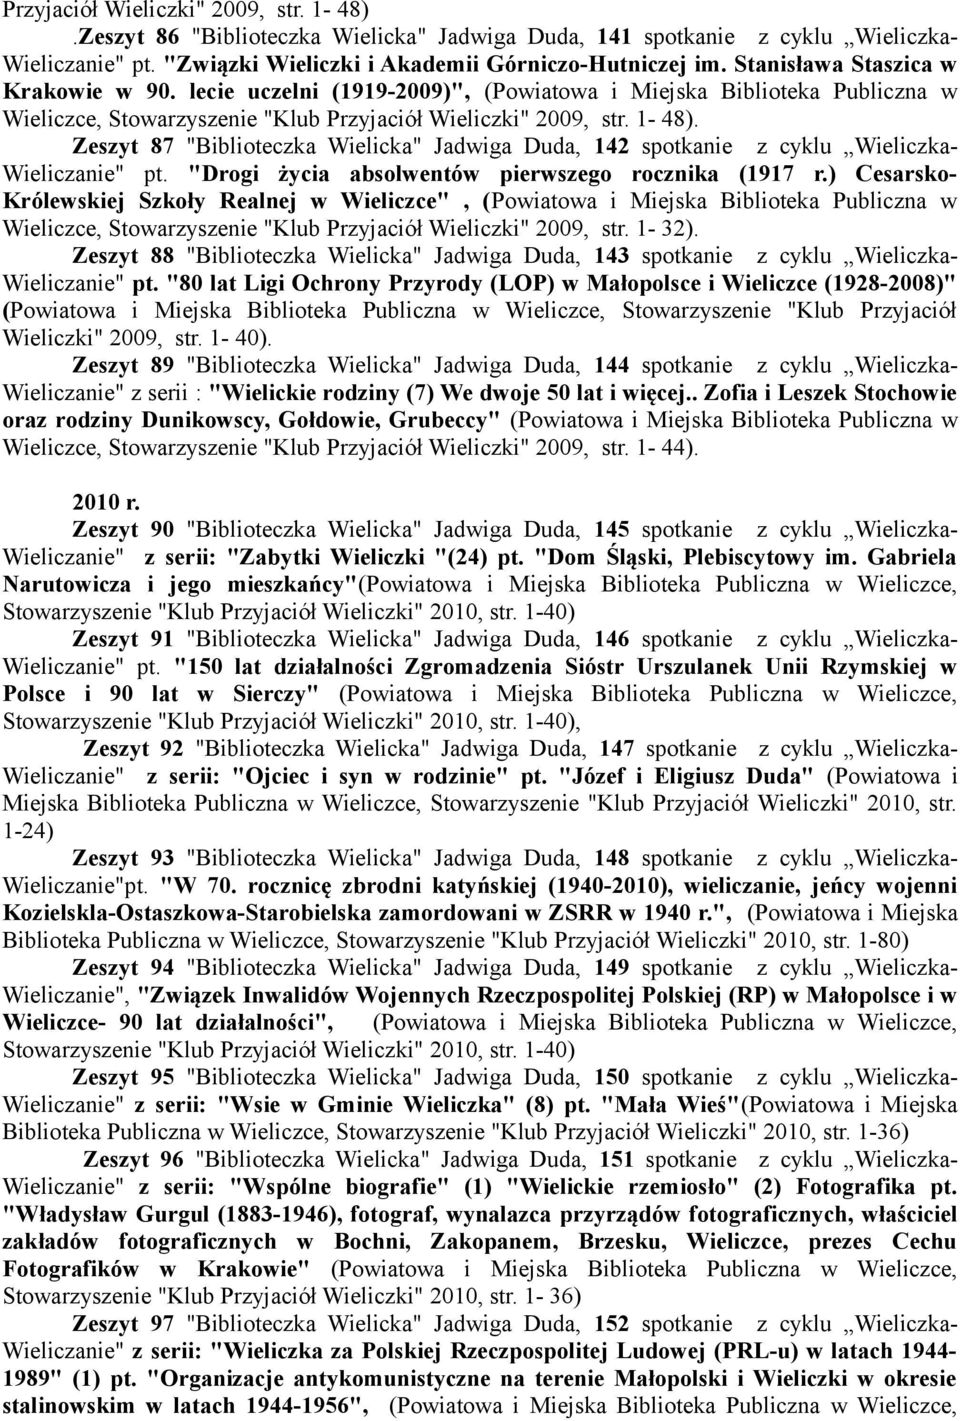 Zeszyt 87 "Biblioteczka Wielicka" Jadwiga Duda, 142 spotkanie z cyklu Wieliczka- Wieliczanie" pt. "Drogi życia absolwentów pierwszego rocznika (1917 r.